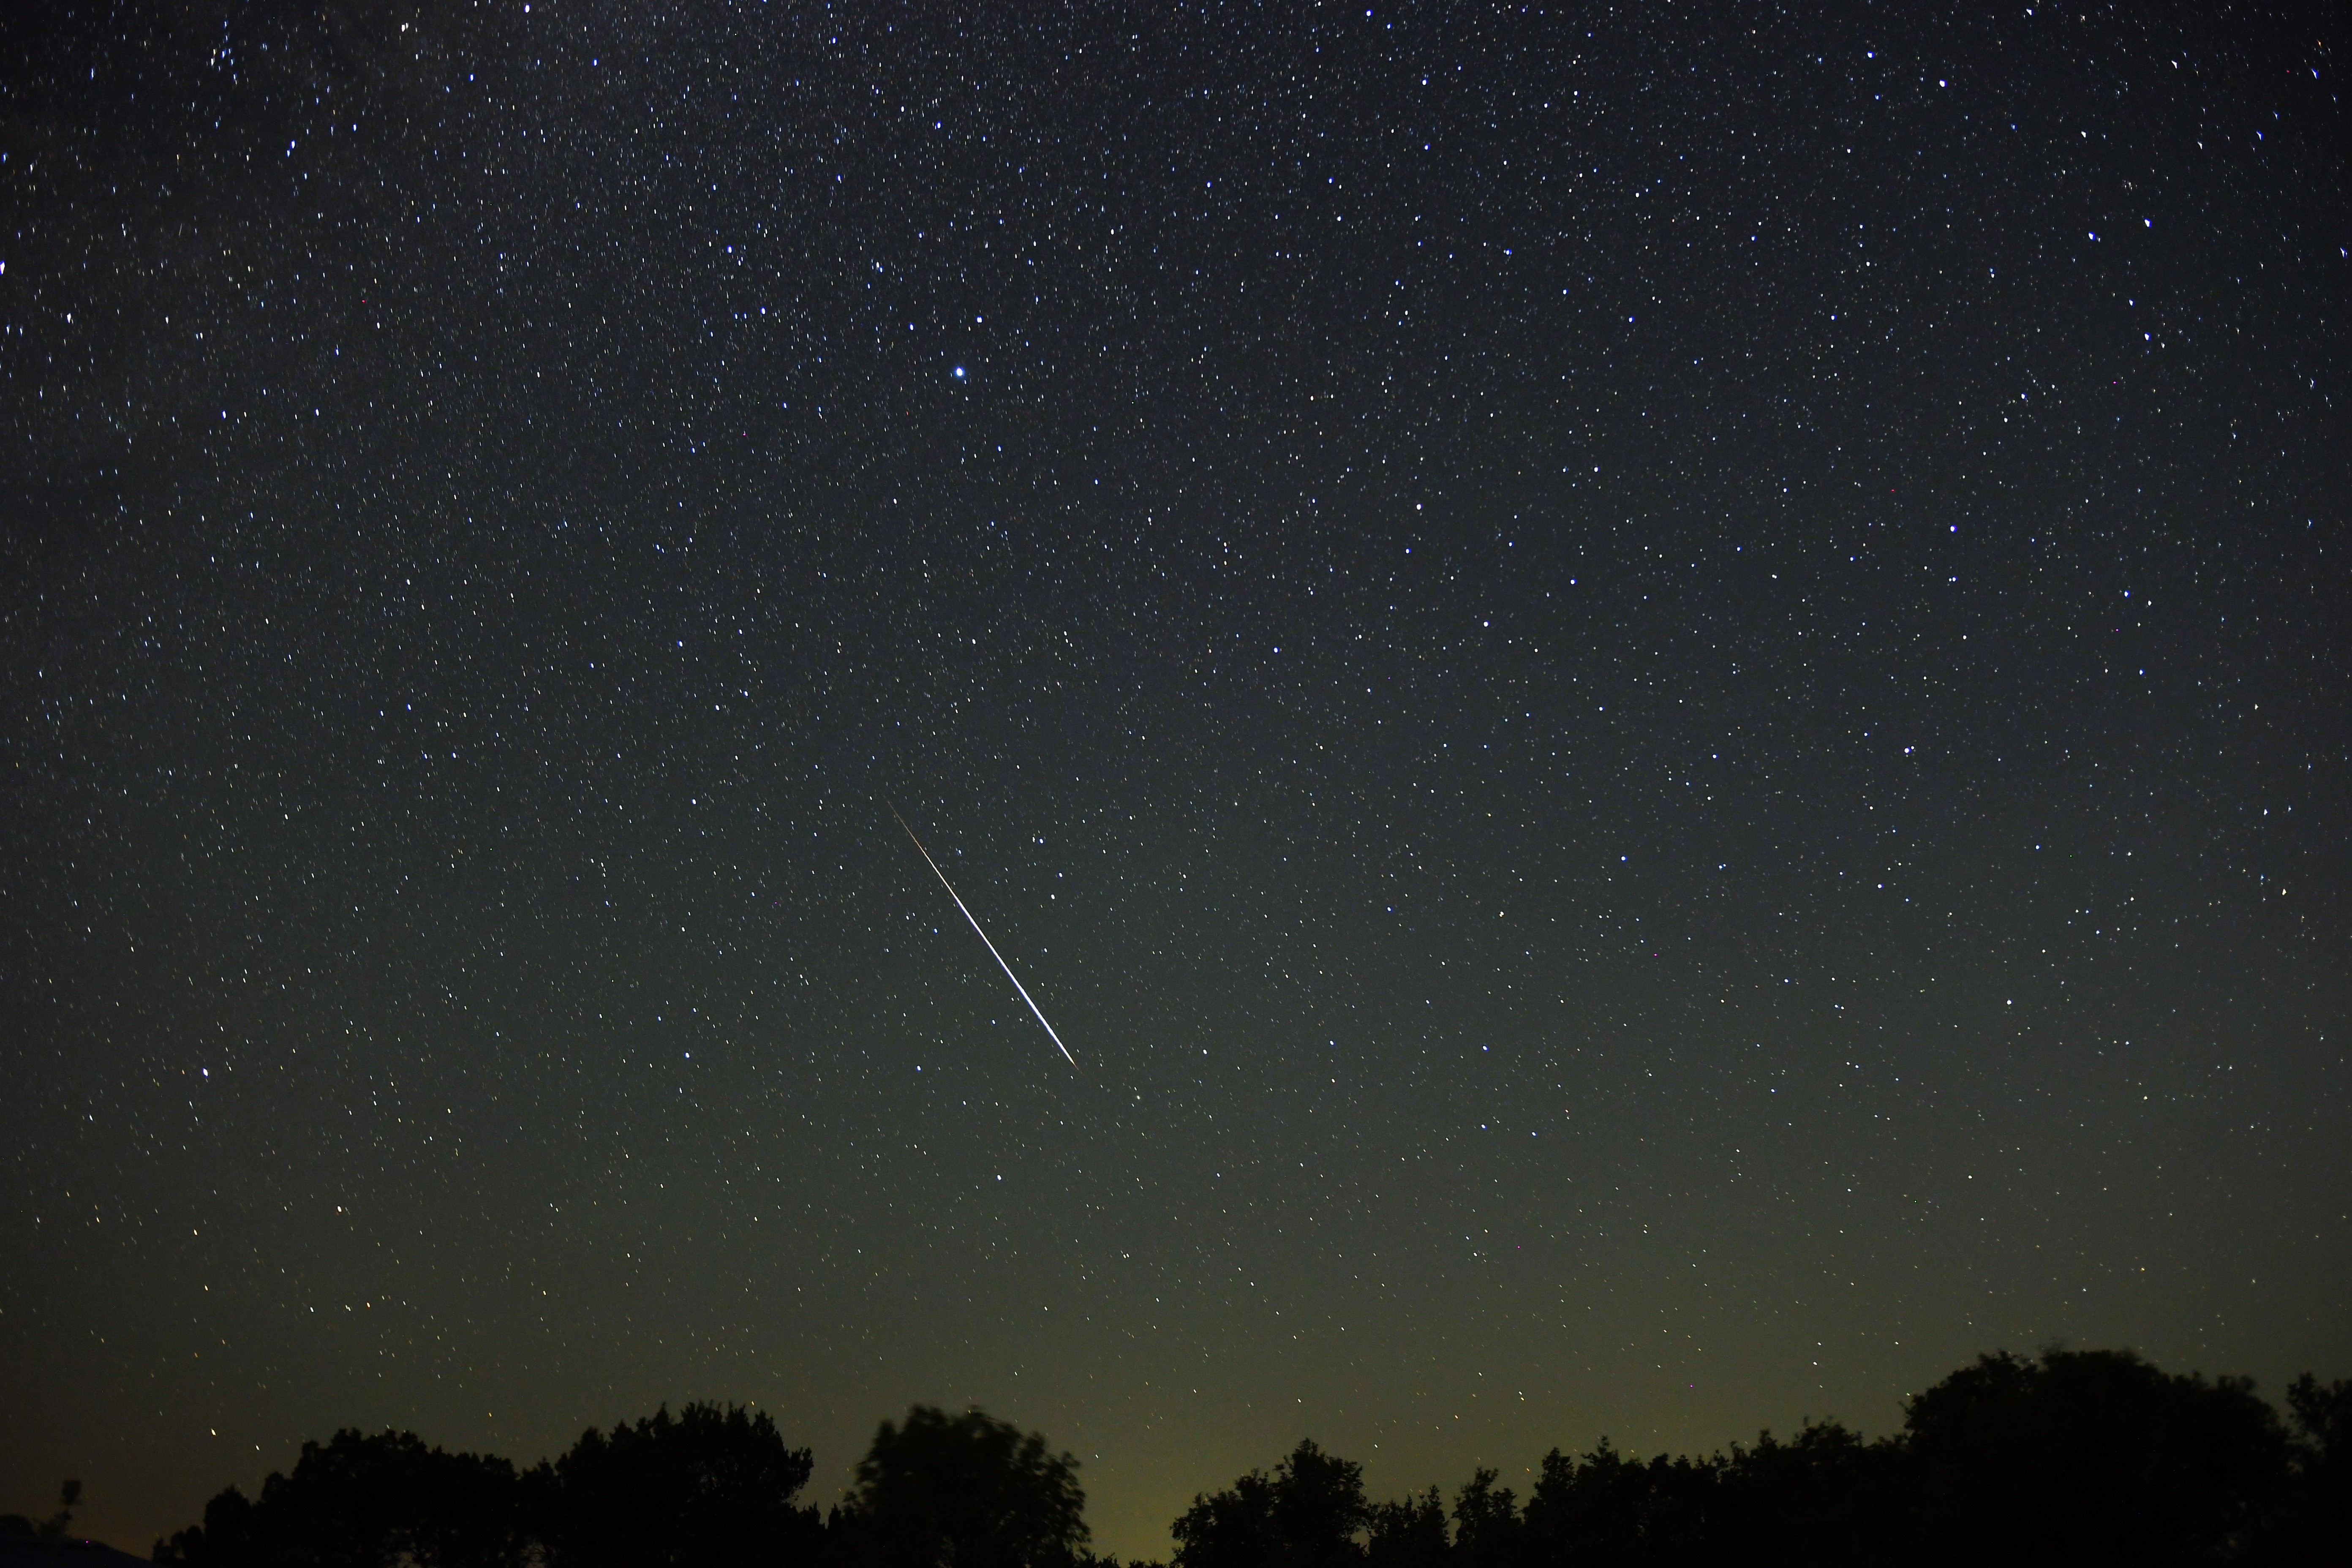 Een meteorenregen wordt afgebeeld tegen een sterrenhemel en een schilderachtige voorgrond